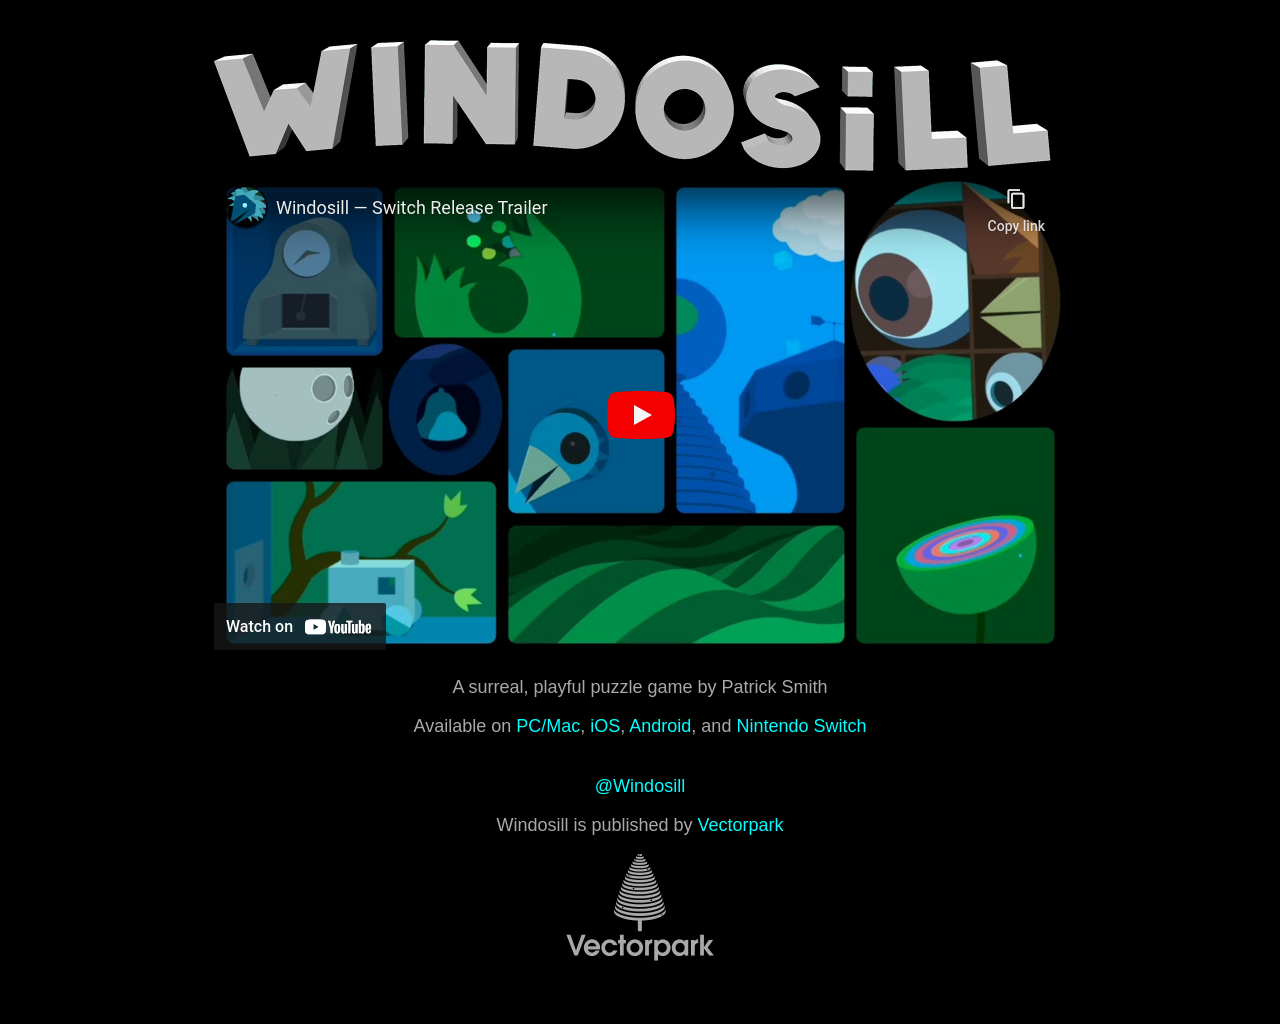 windosill.com